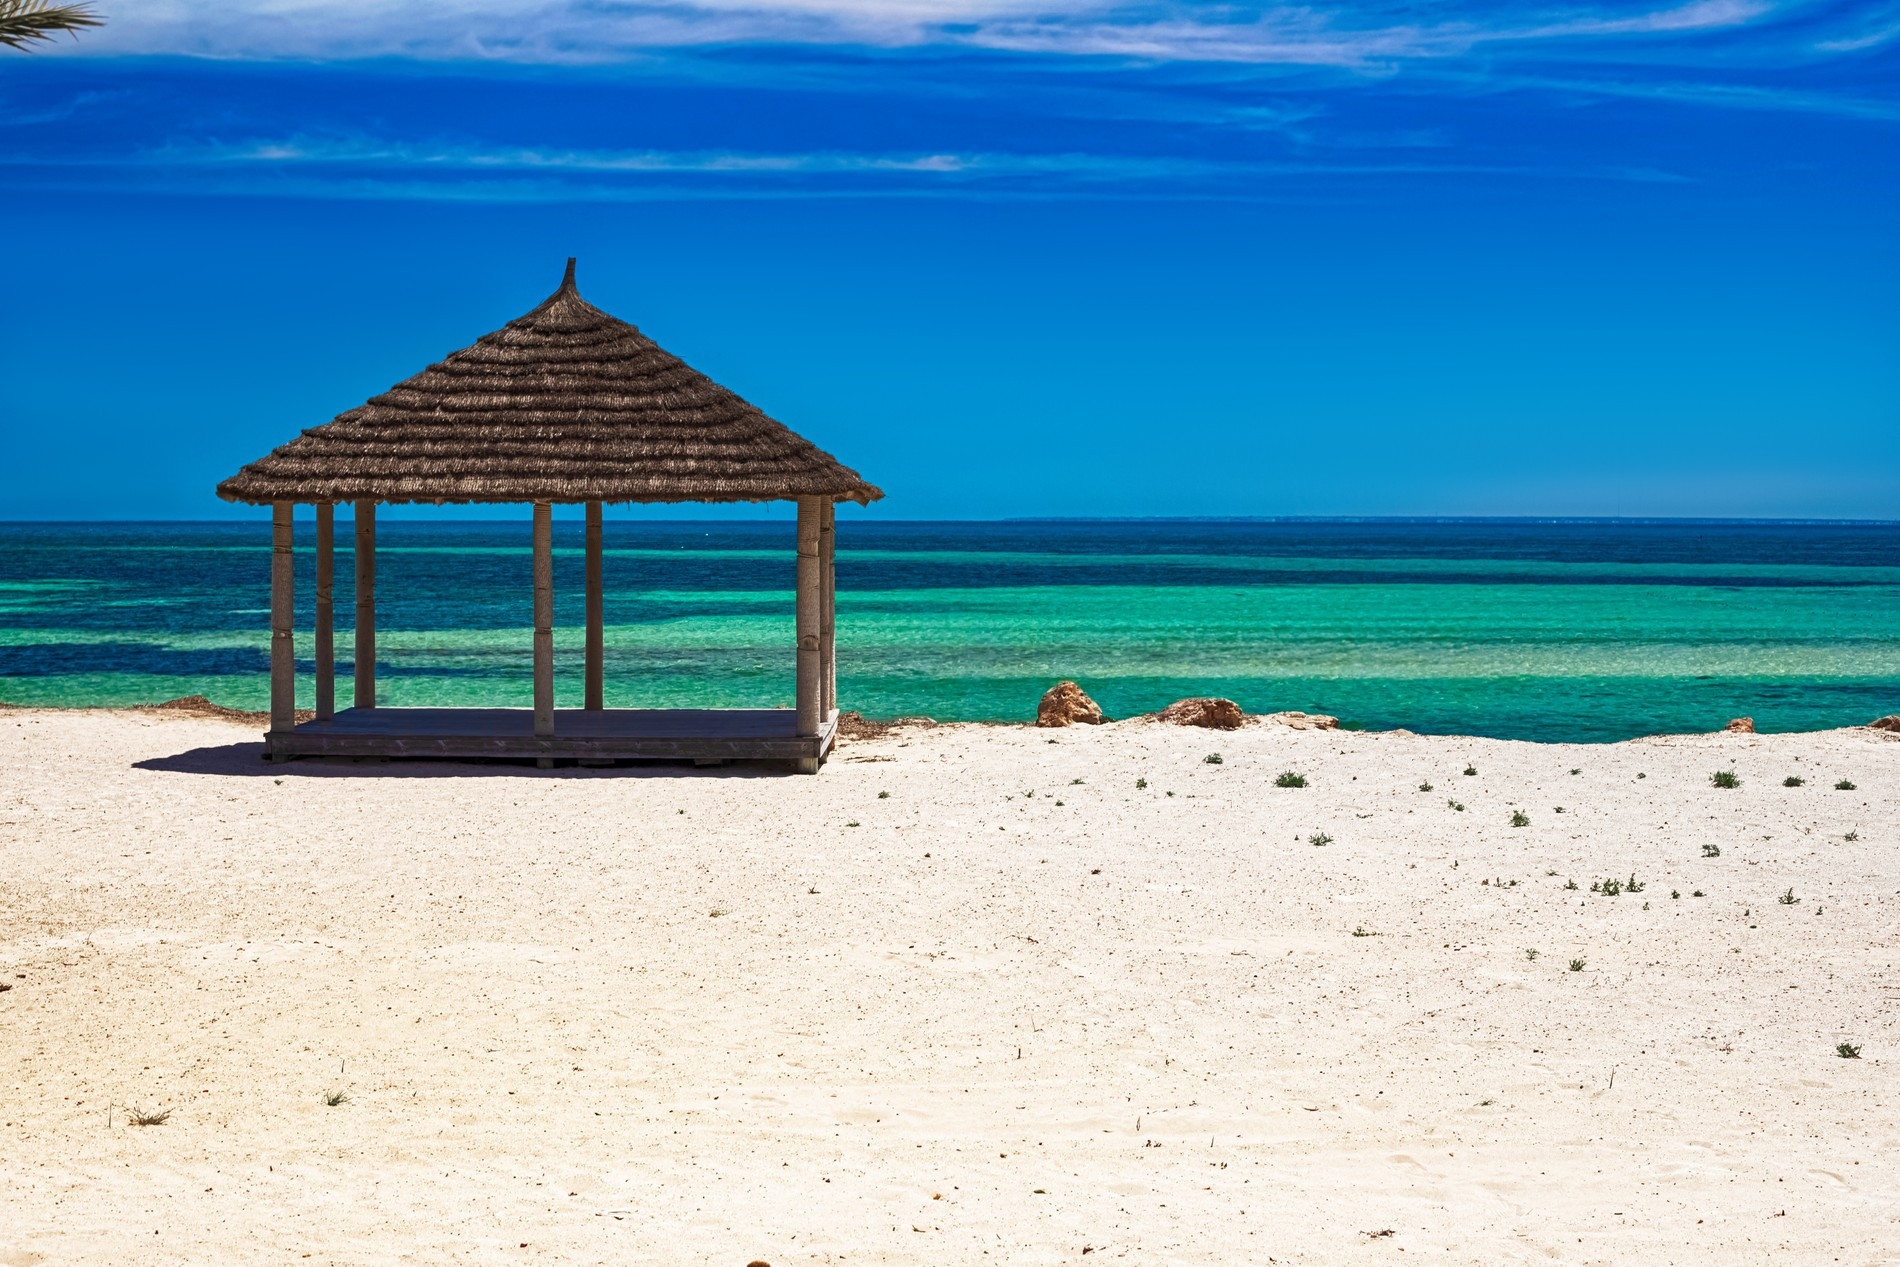 Пляж в Тунисе
Фото: Getty Images